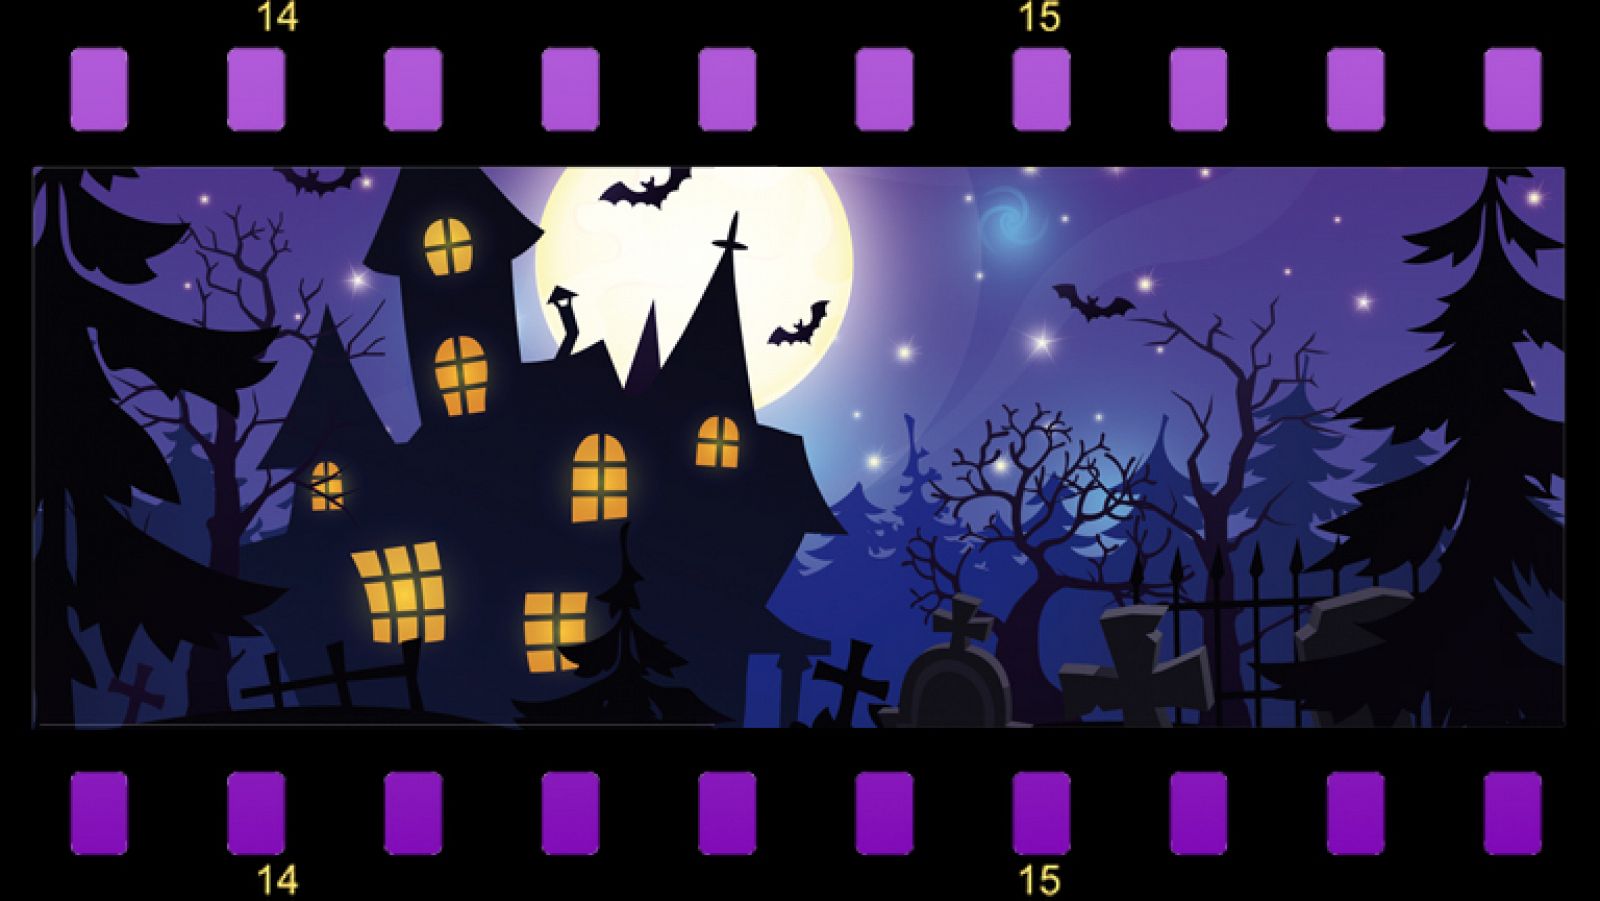 Brujas, monstruos, vampiros y zombis...¡Halloween llega a Cine Clan! - Clan  TV 